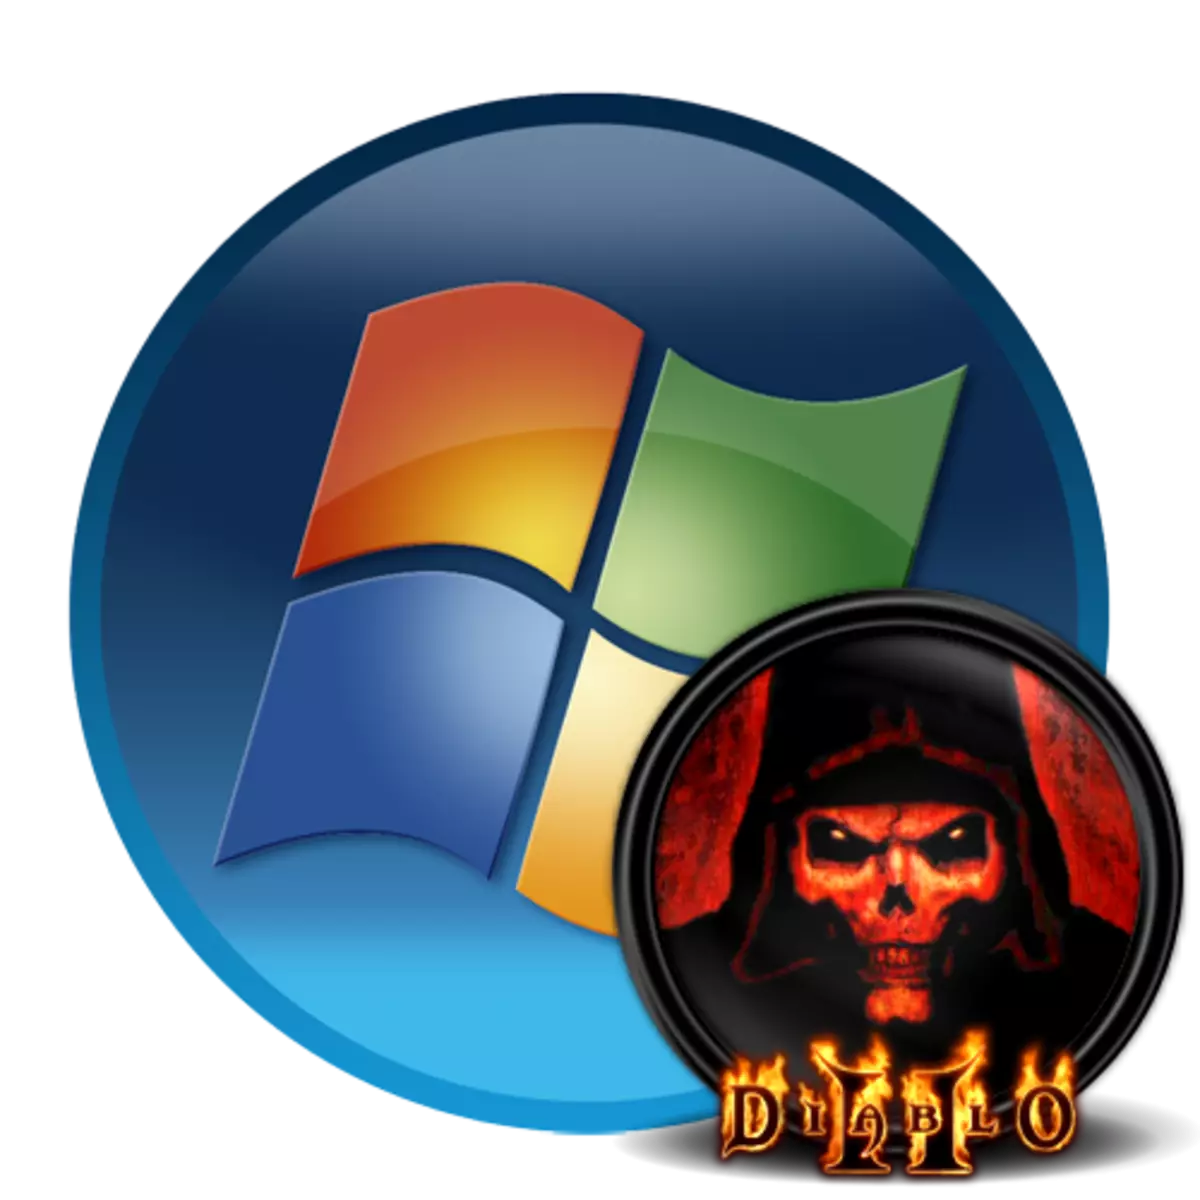 Diablo 2 begjint net op Windows 7